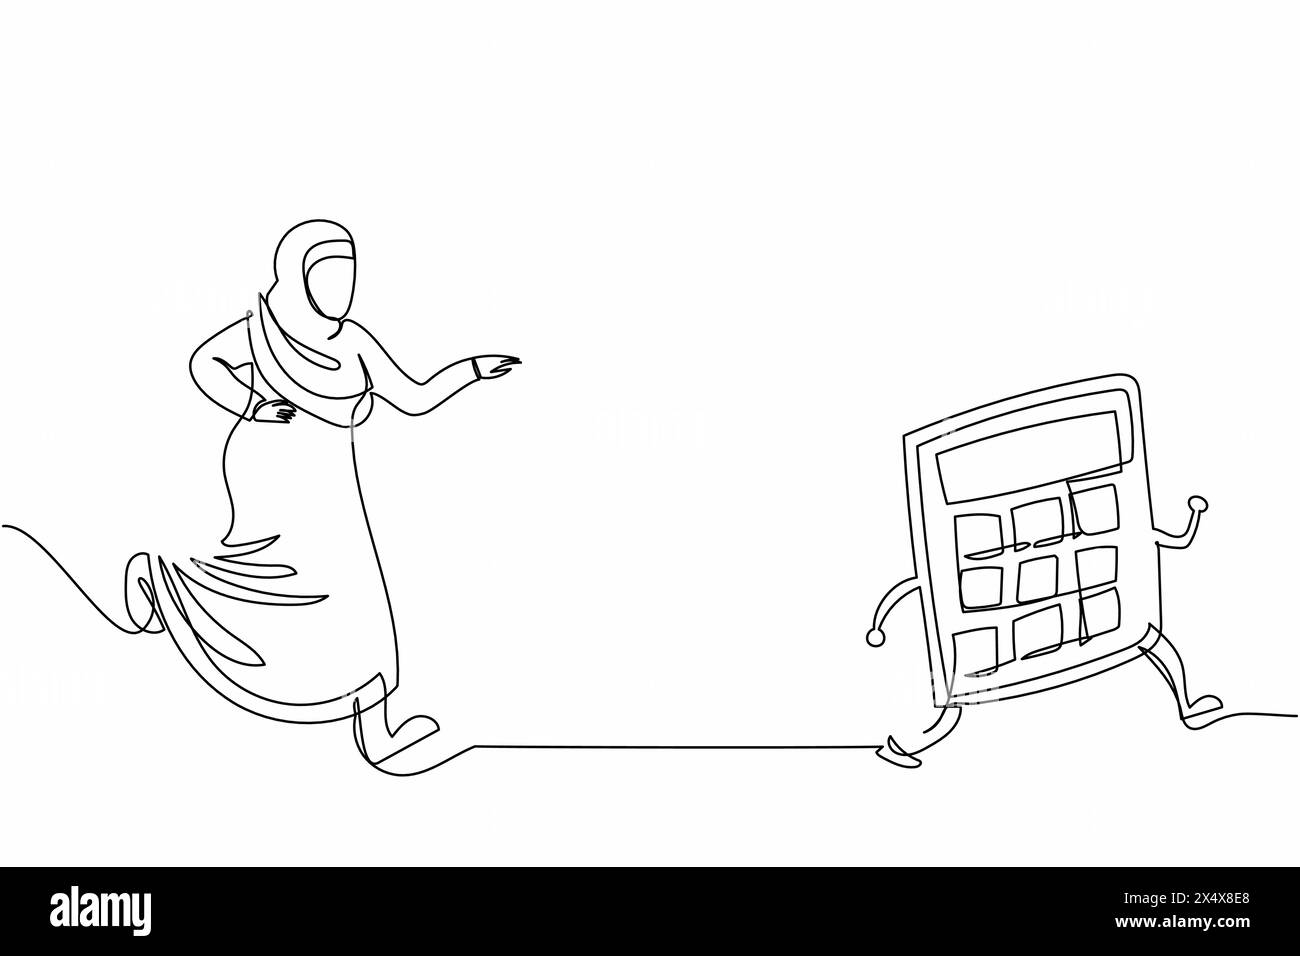 Eine einzige Linie, die arabische Geschäftsfrau zeichnet, die Taschenrechner jagt. Ausrüstung für Buchhaltungsdienstleistungen, Berechnung von Aufwendungen, Steuern, Finanzberichterstattung. Stock Vektor